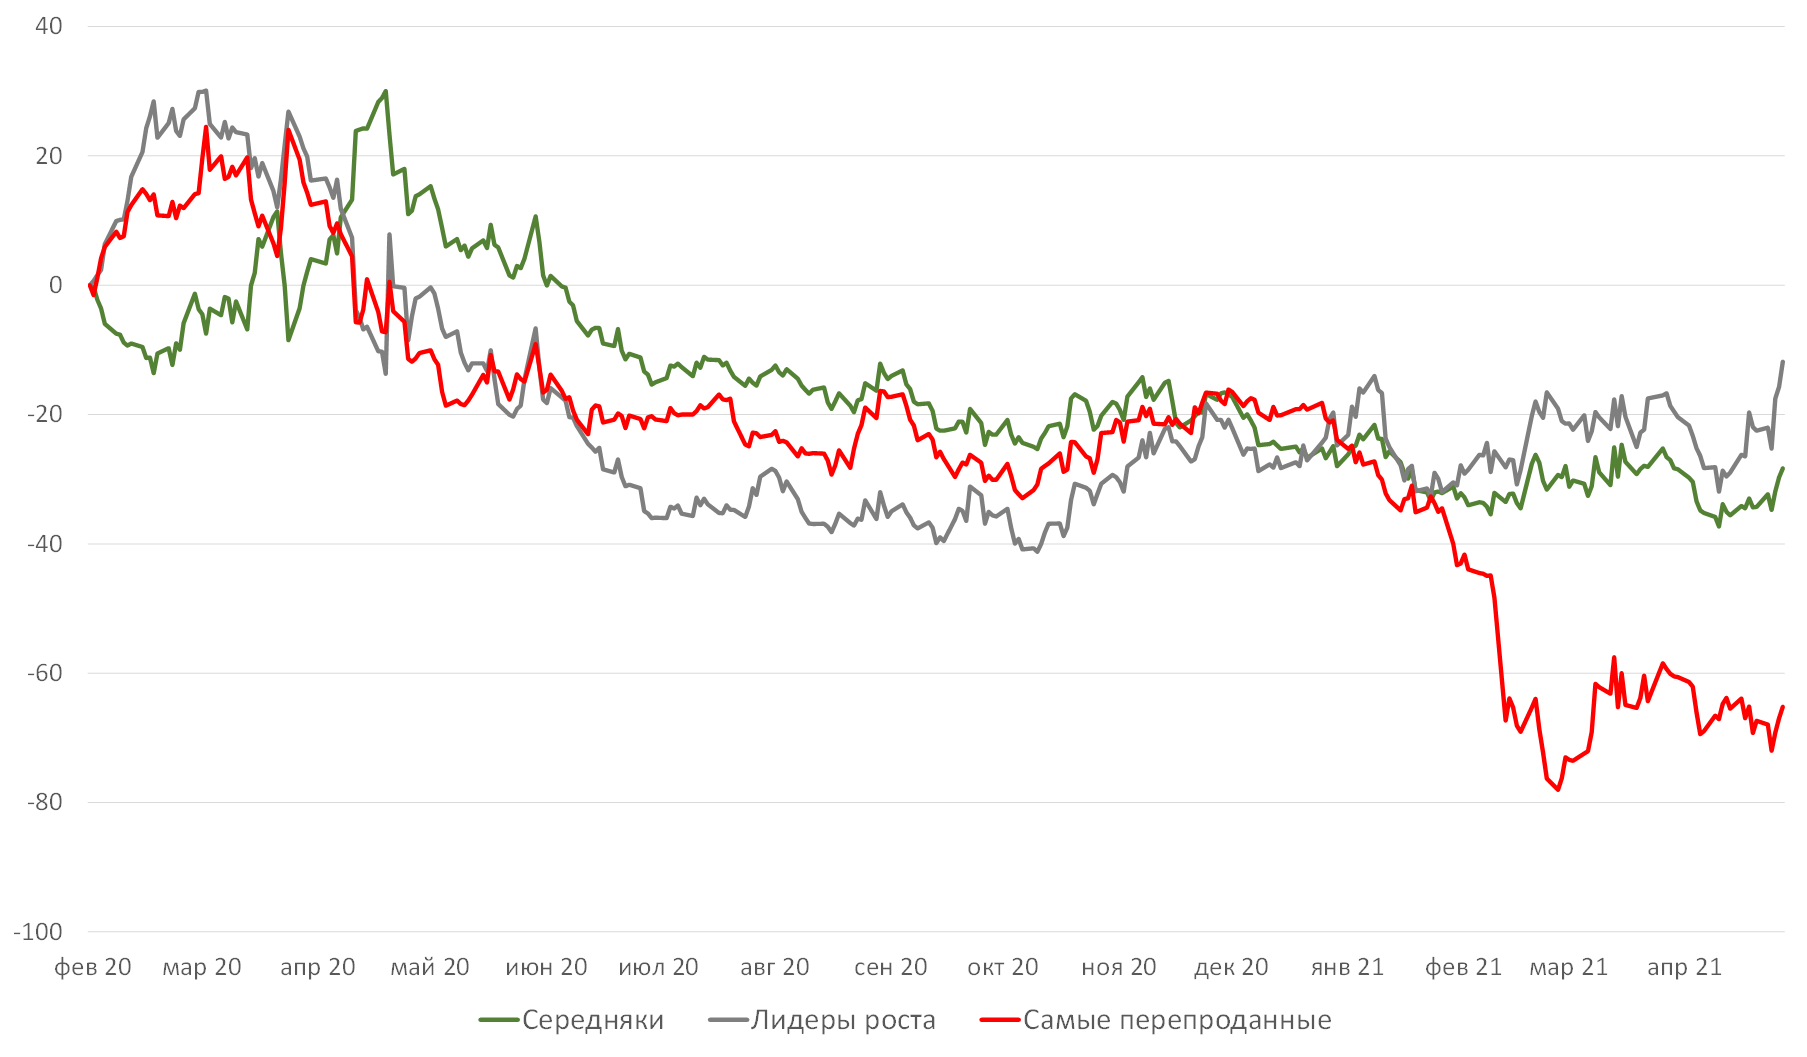 Разница в динамике между акциями мировых нефтяных компаний и ценой нефти, %